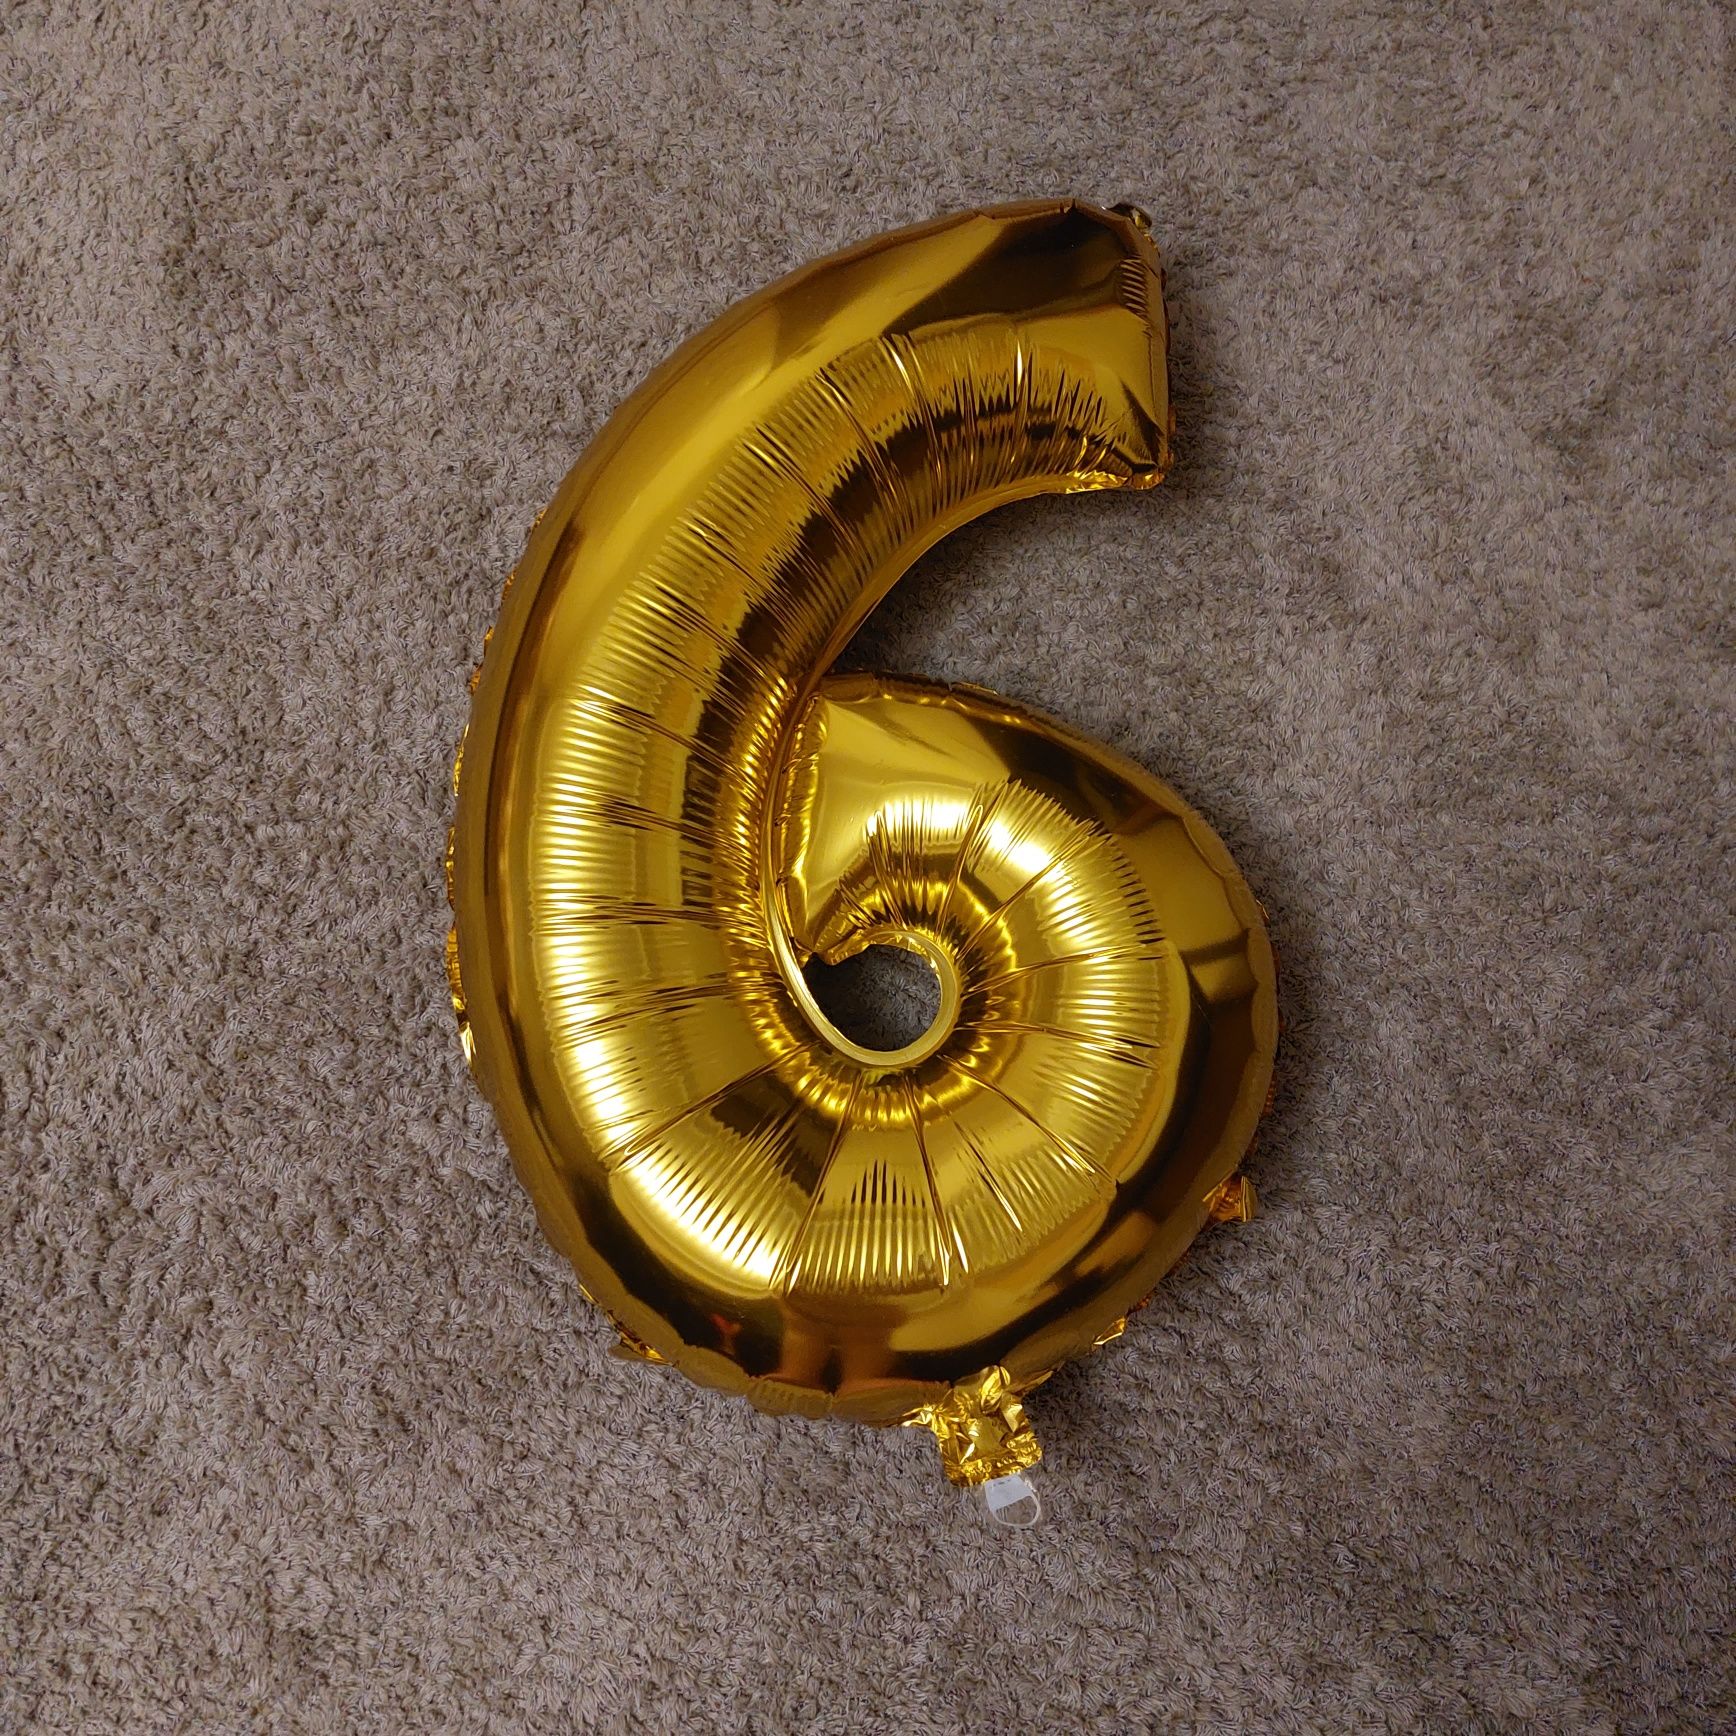 Нова кулька цифра 6 на свято.Колір золото.